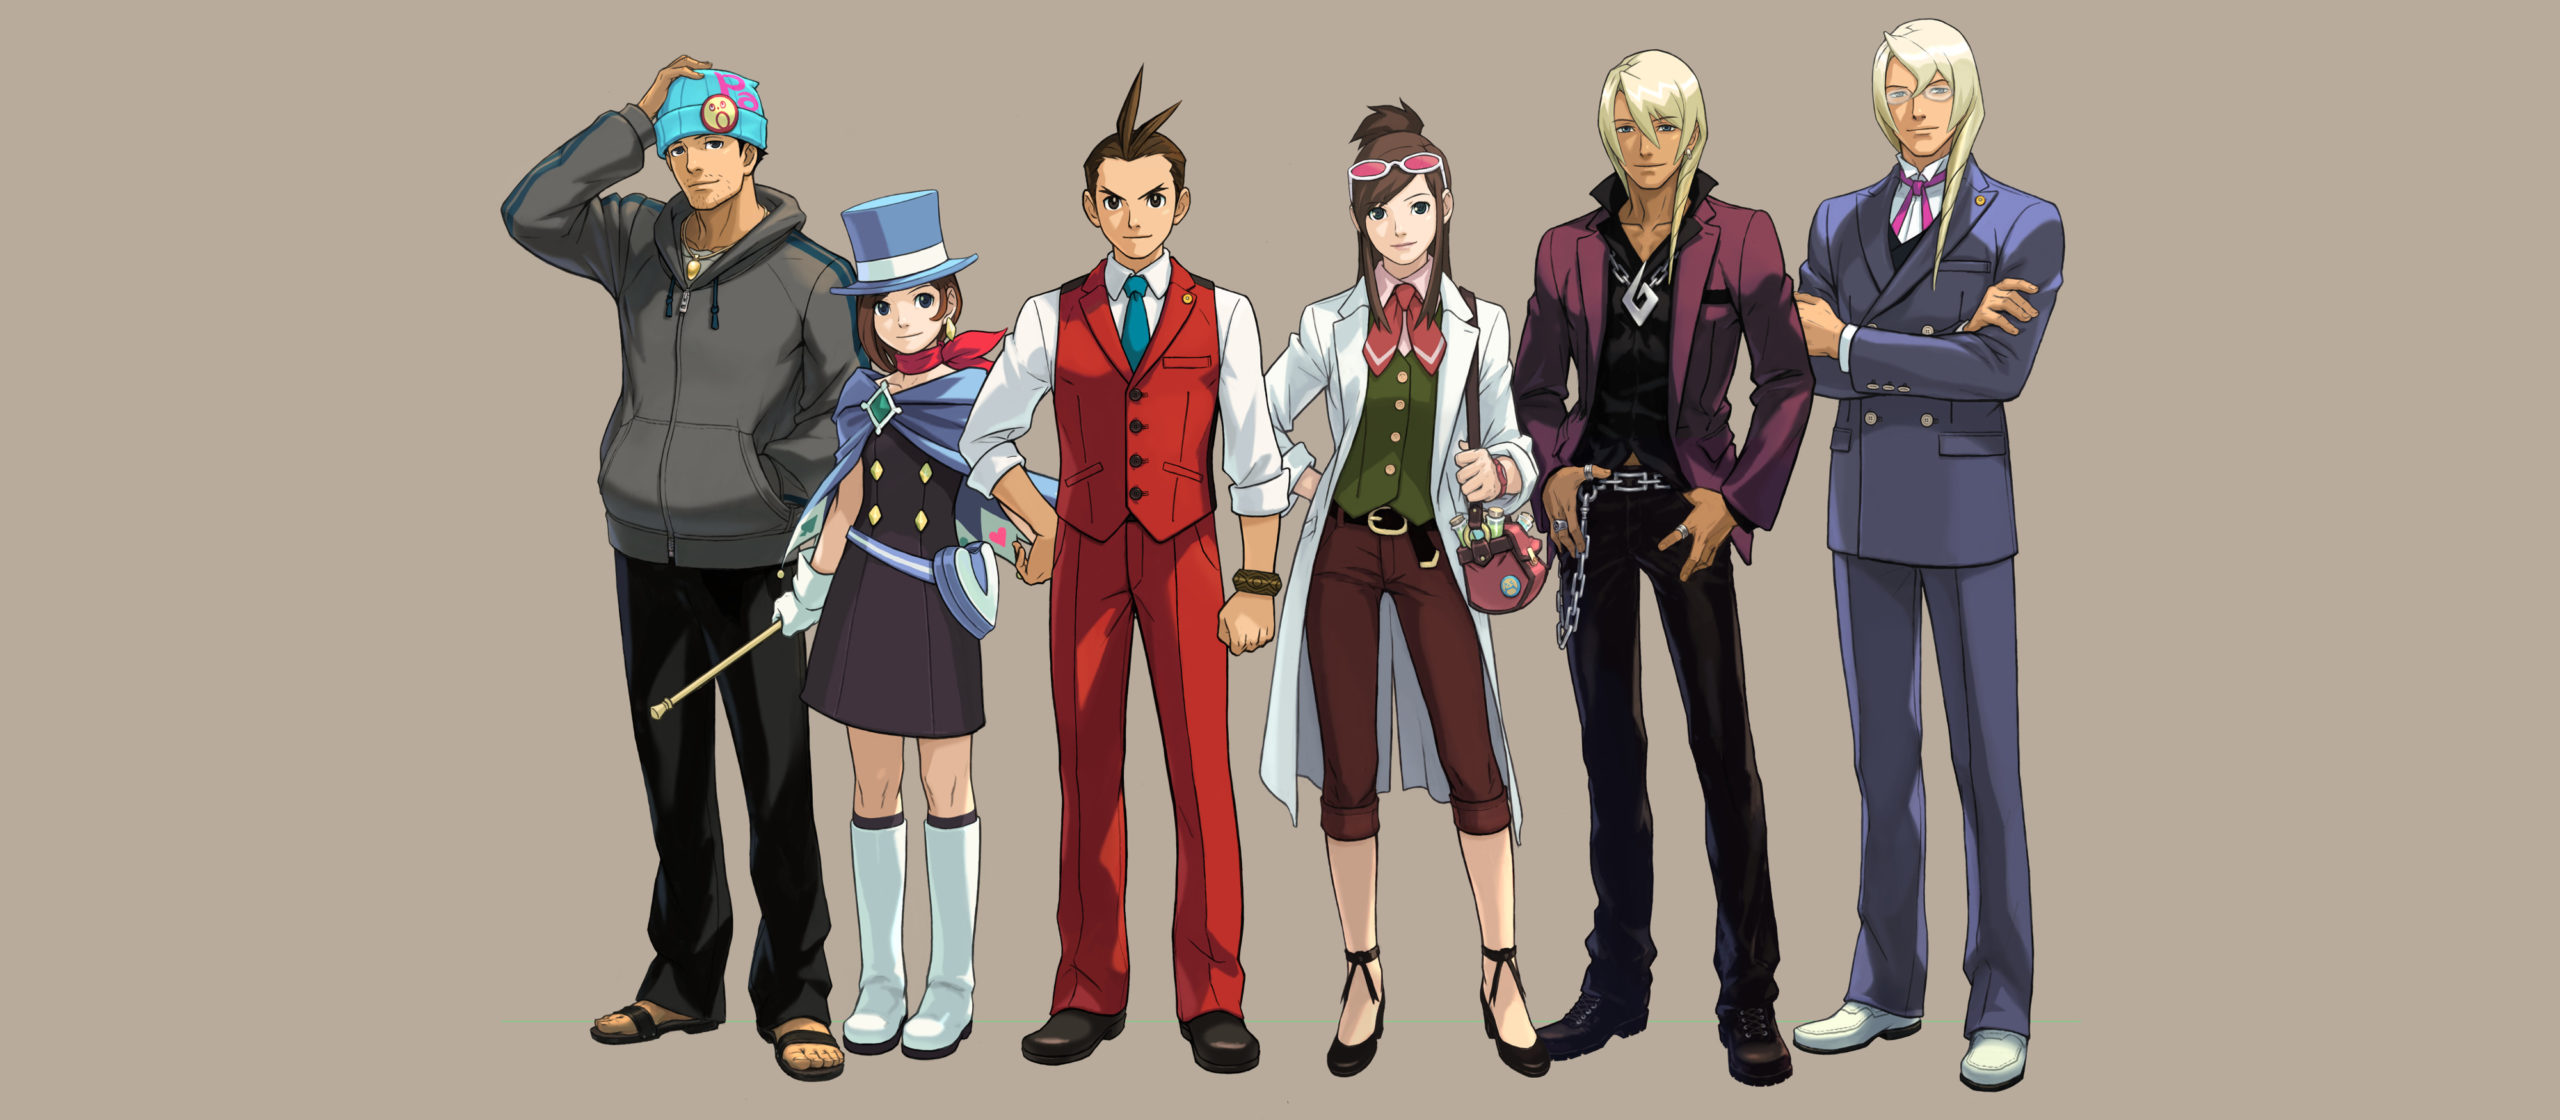 Ein Gruppenbild der wichtigsten Charaktere aus "Apollo Justice: Ace Attorney" (Capcom).